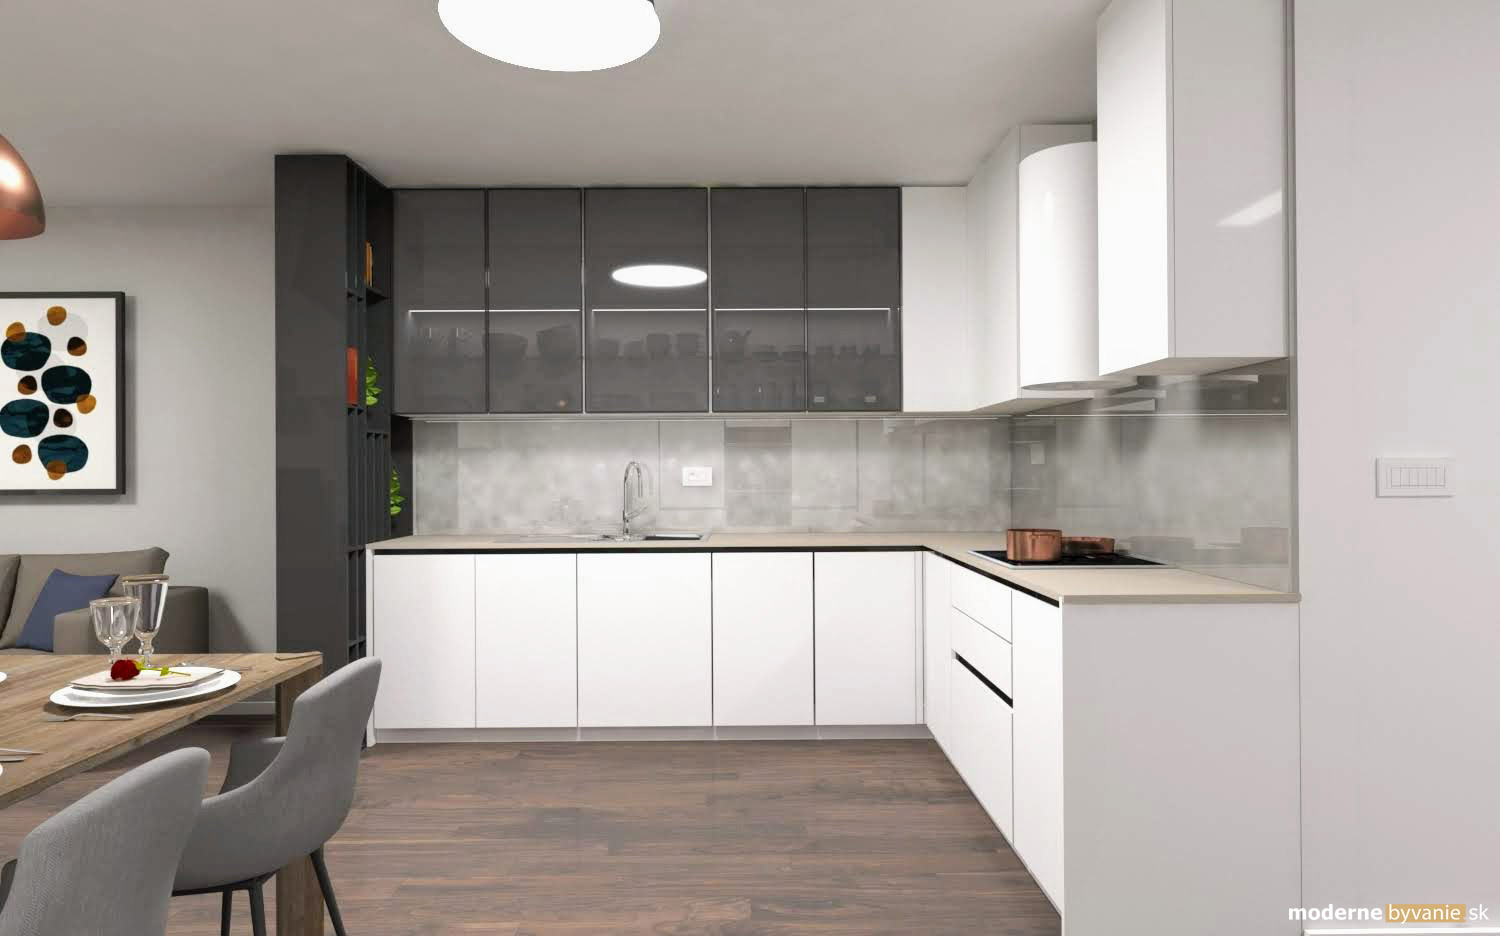 Návrh interiéru - Obývačka a kuchyňa -Luxusný interiér s medenými prvkami